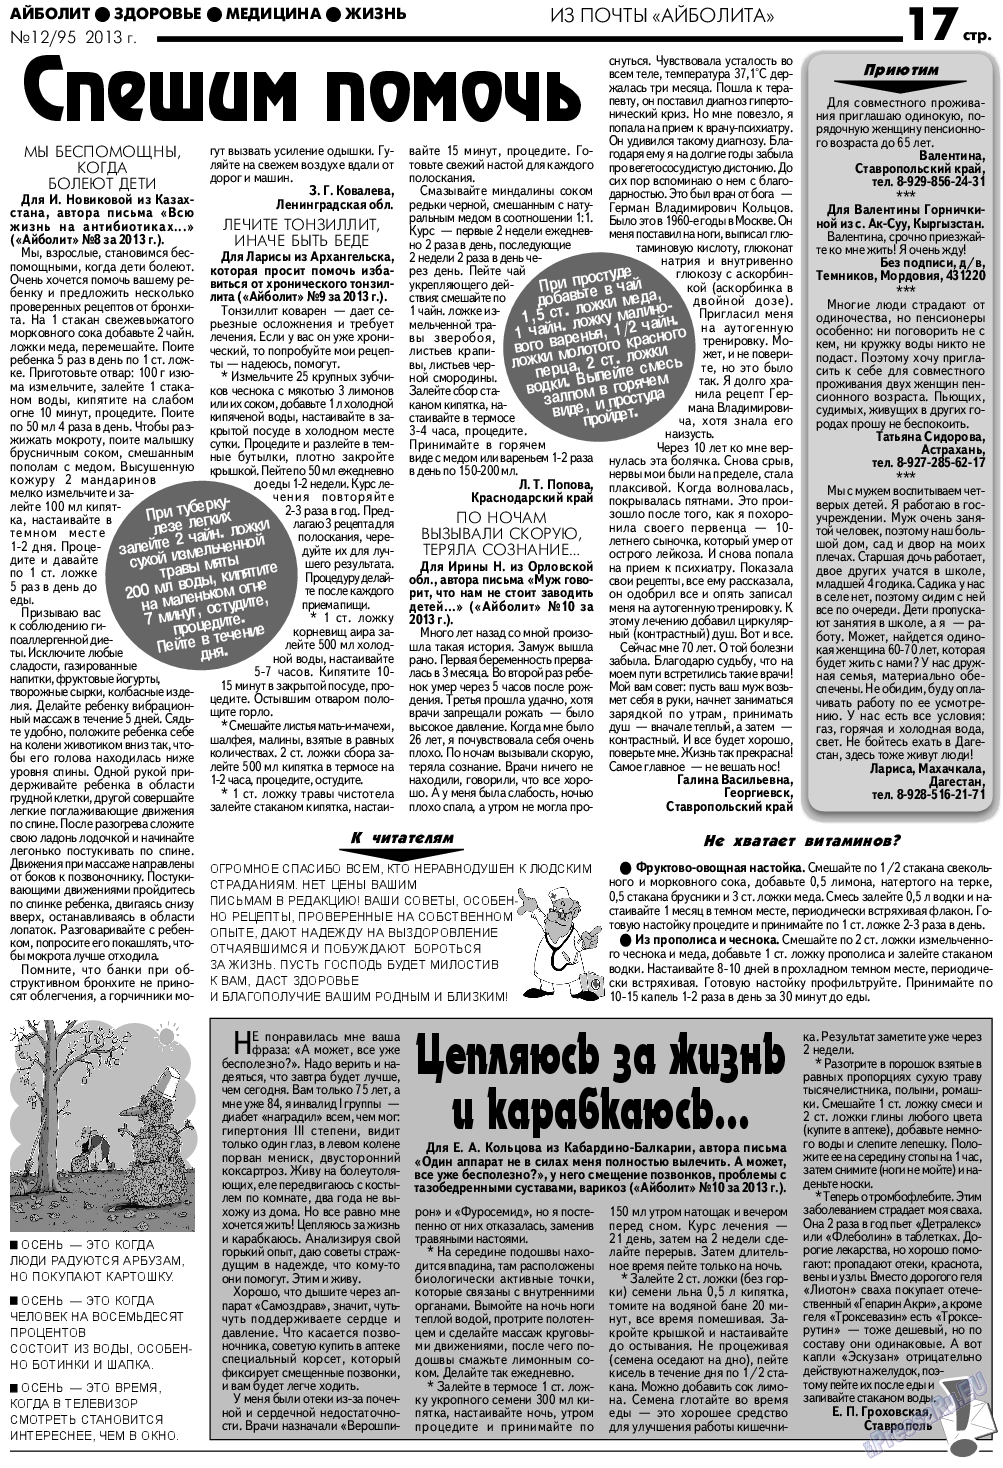 АйБолит, газета. 2013 №12 стр.17